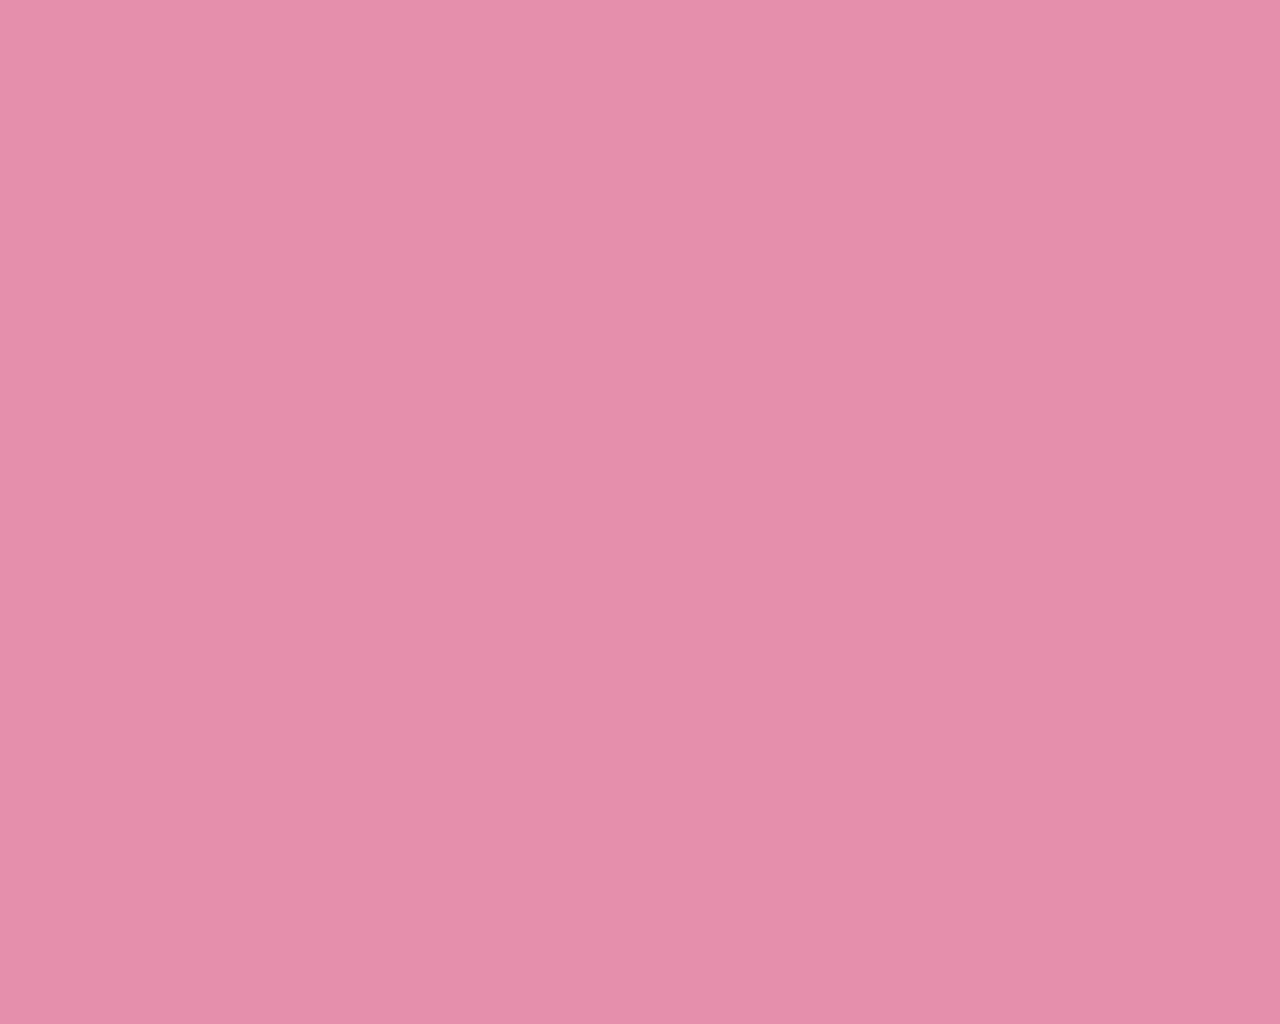 Solid Light Pink Wallpaper 1280x1024 light thulian pink